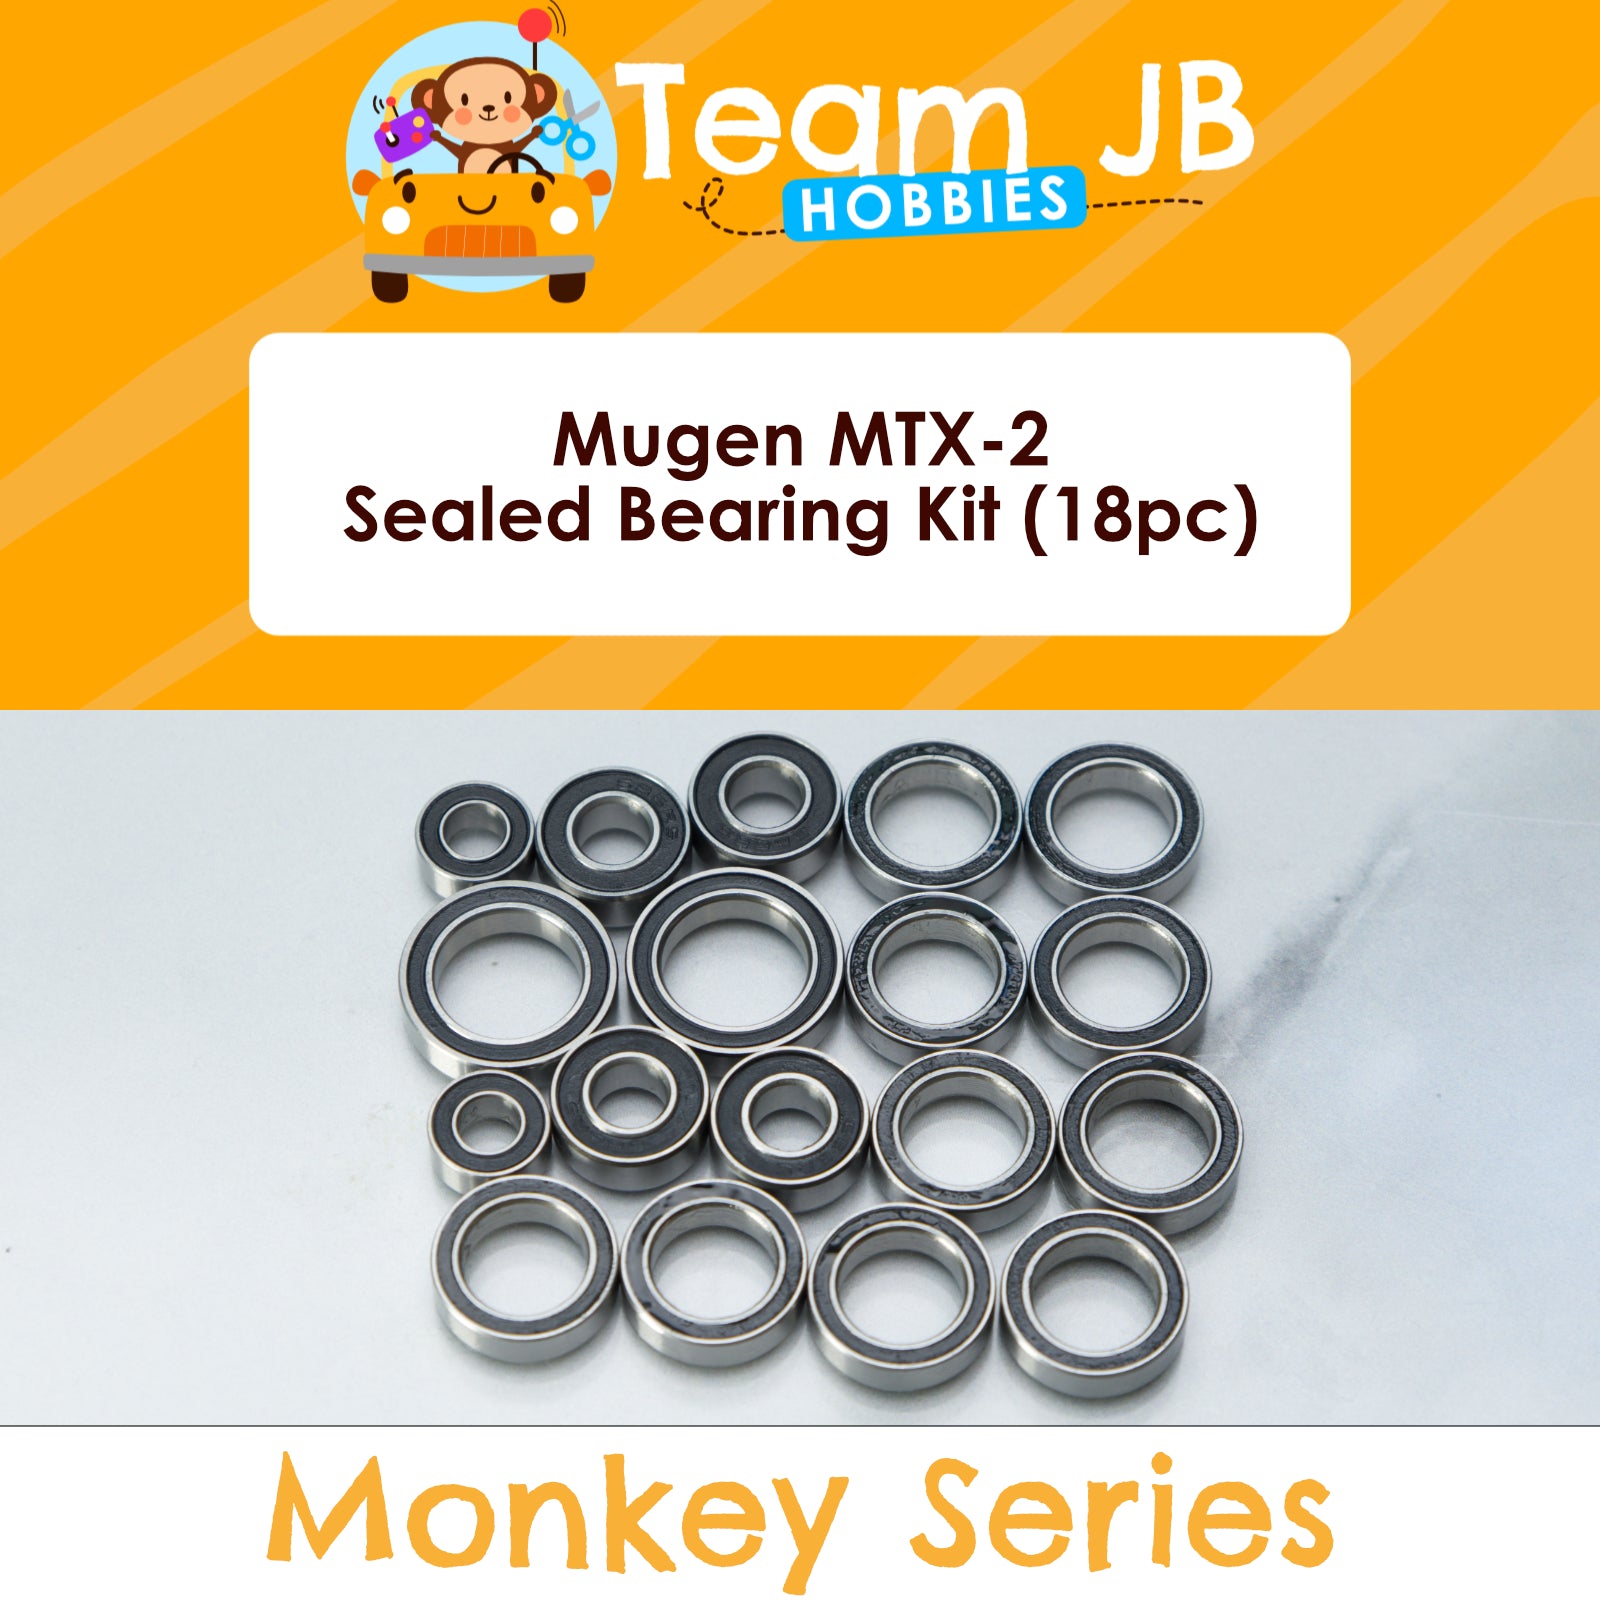 Mugen MTX-2 - Sealed Bearing Kit